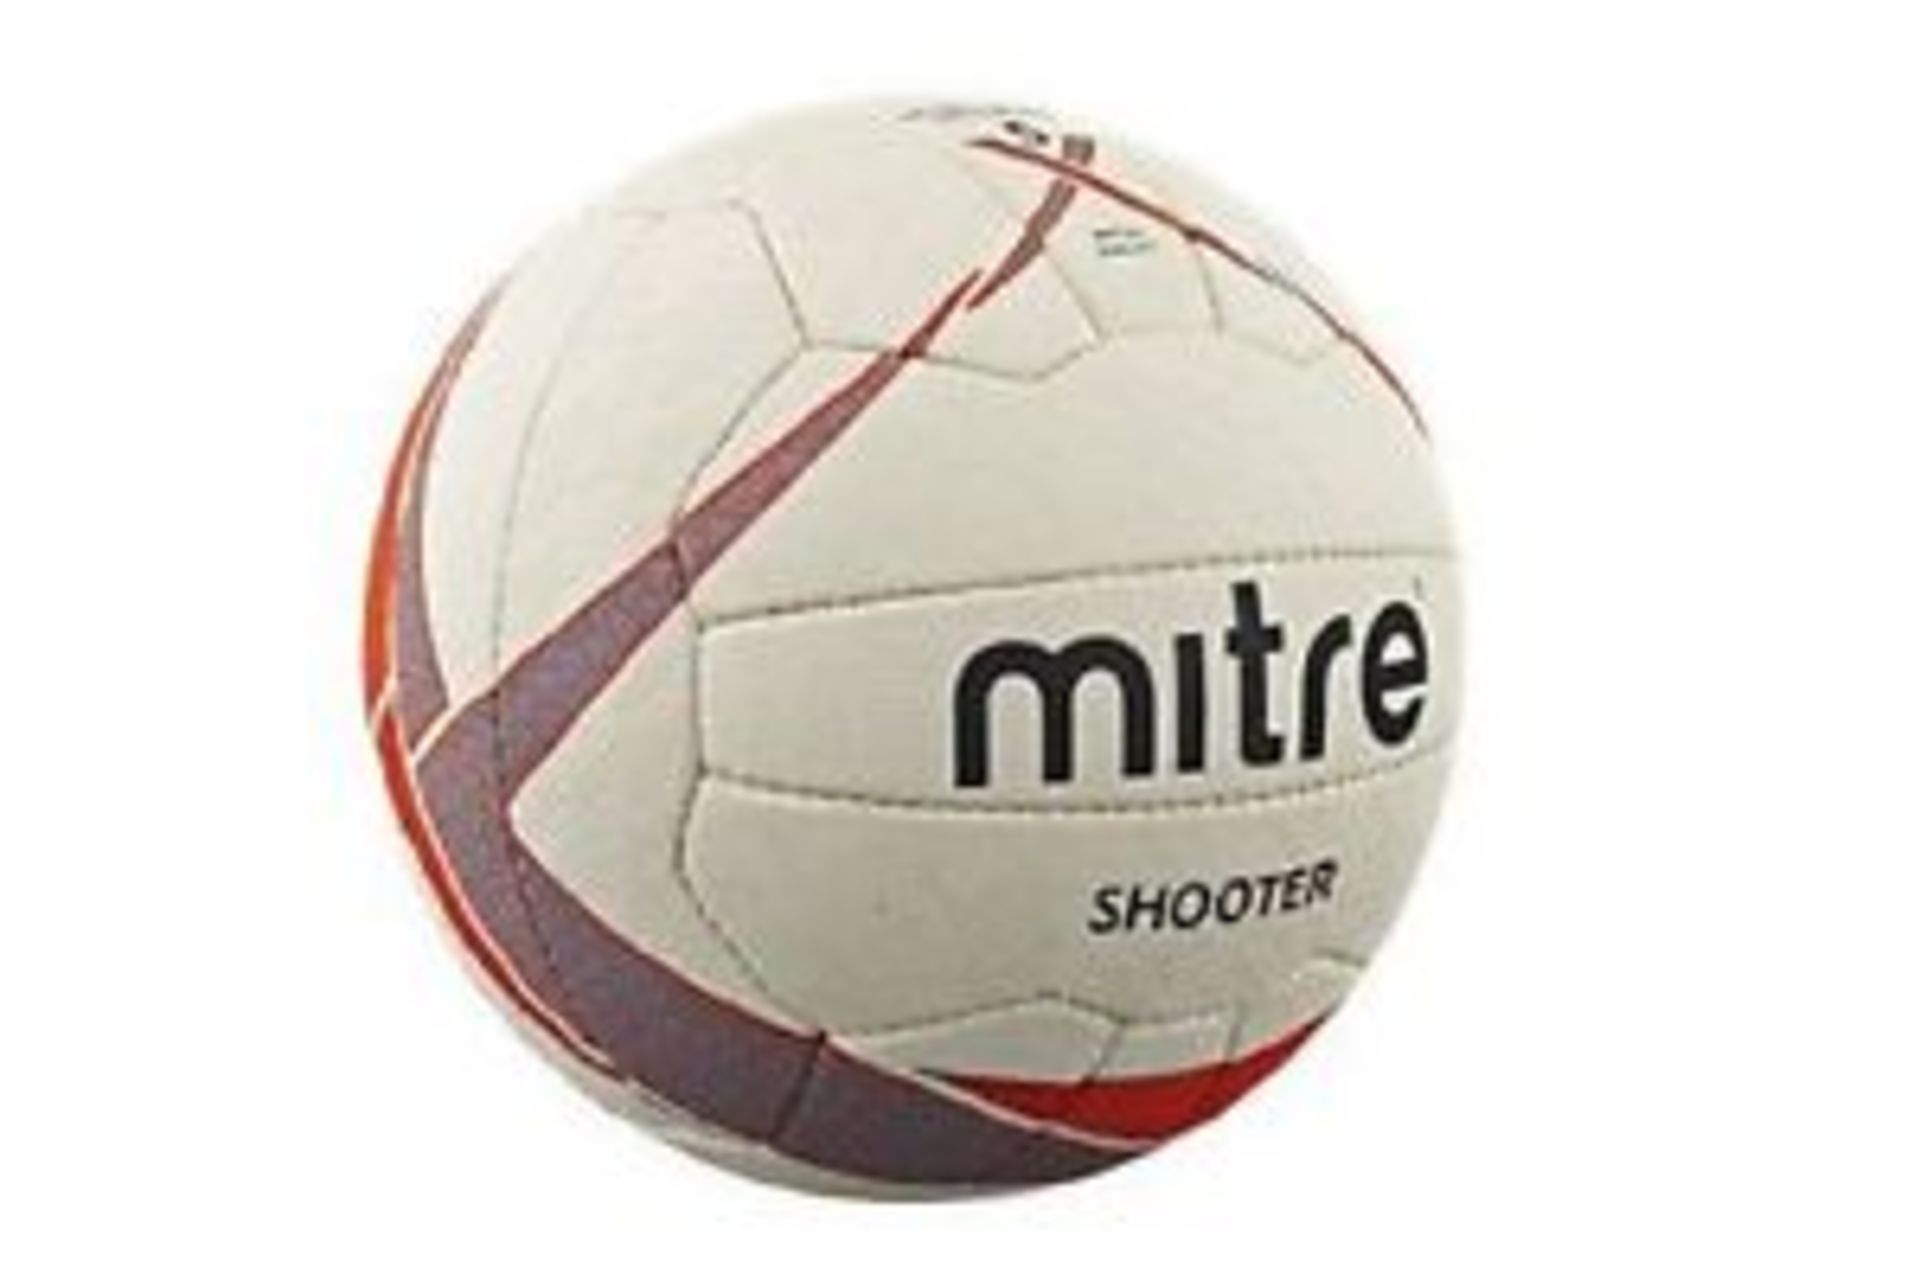 V Brand New 3 x Mitre Shooter Netballs Size 4 TOTAL ISP£24.00 (Netball UK)